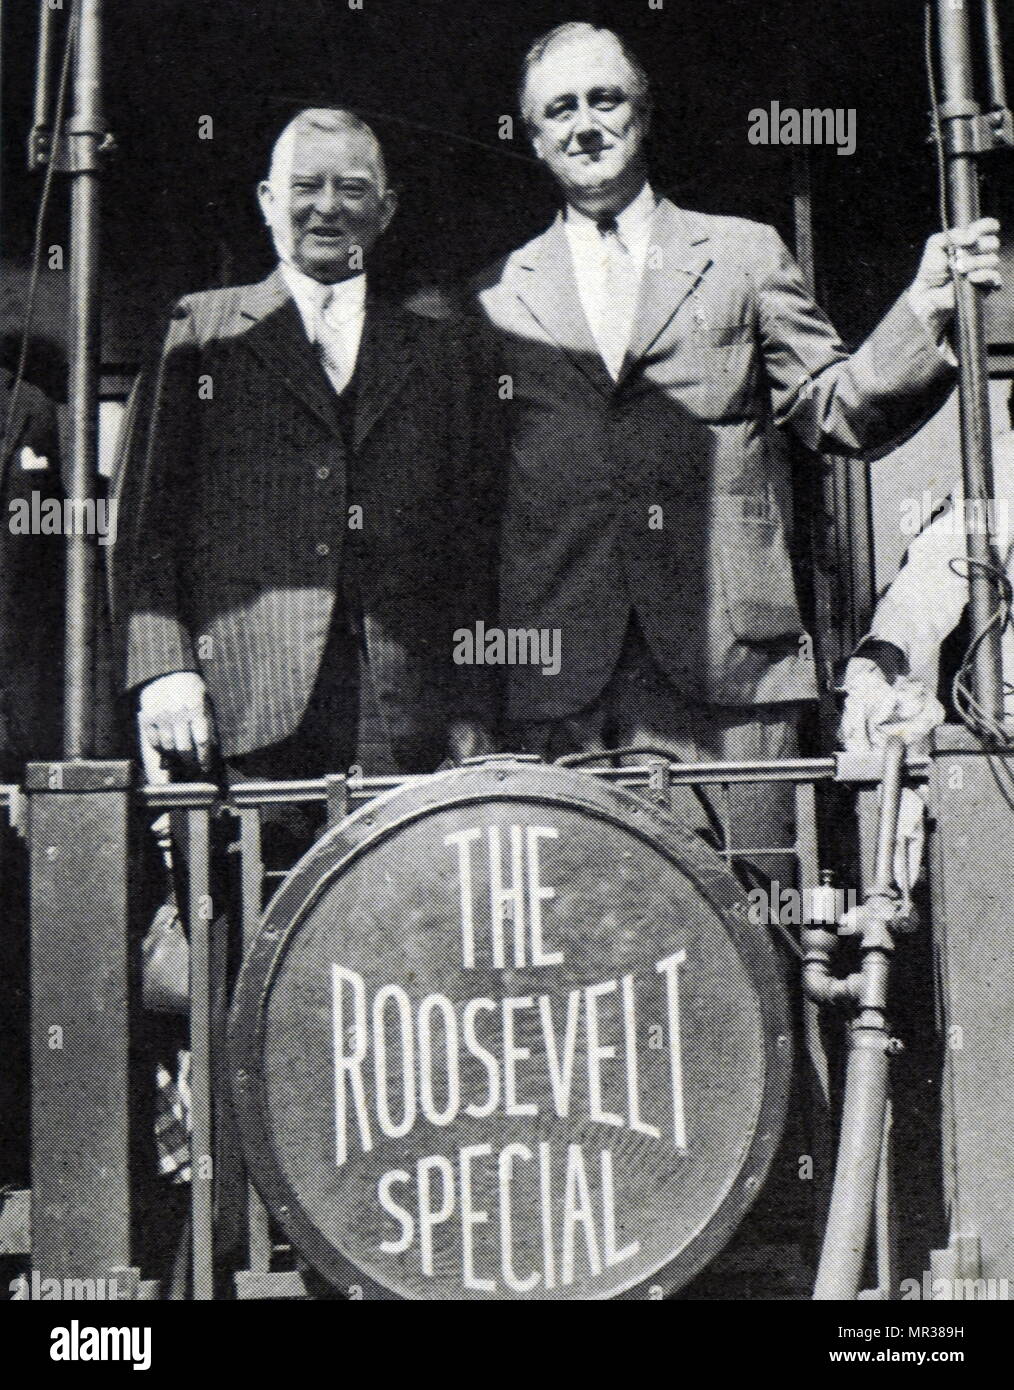 Foto von Präsident Roosevelt mit John Nance Garner. Franklin D. Roosevelt (1882-1945) amerikanischer Staatsmann und politische Führer, die als 32. Präsident der Vereinigten Staaten gedient. John N. Garner (1868-1967), bekannt als "Cactus Jack", war ein US-amerikanischer Demokratische Politiker und Rechtsanwalt aus Texas. Vom 20. Jahrhundert Stockfoto